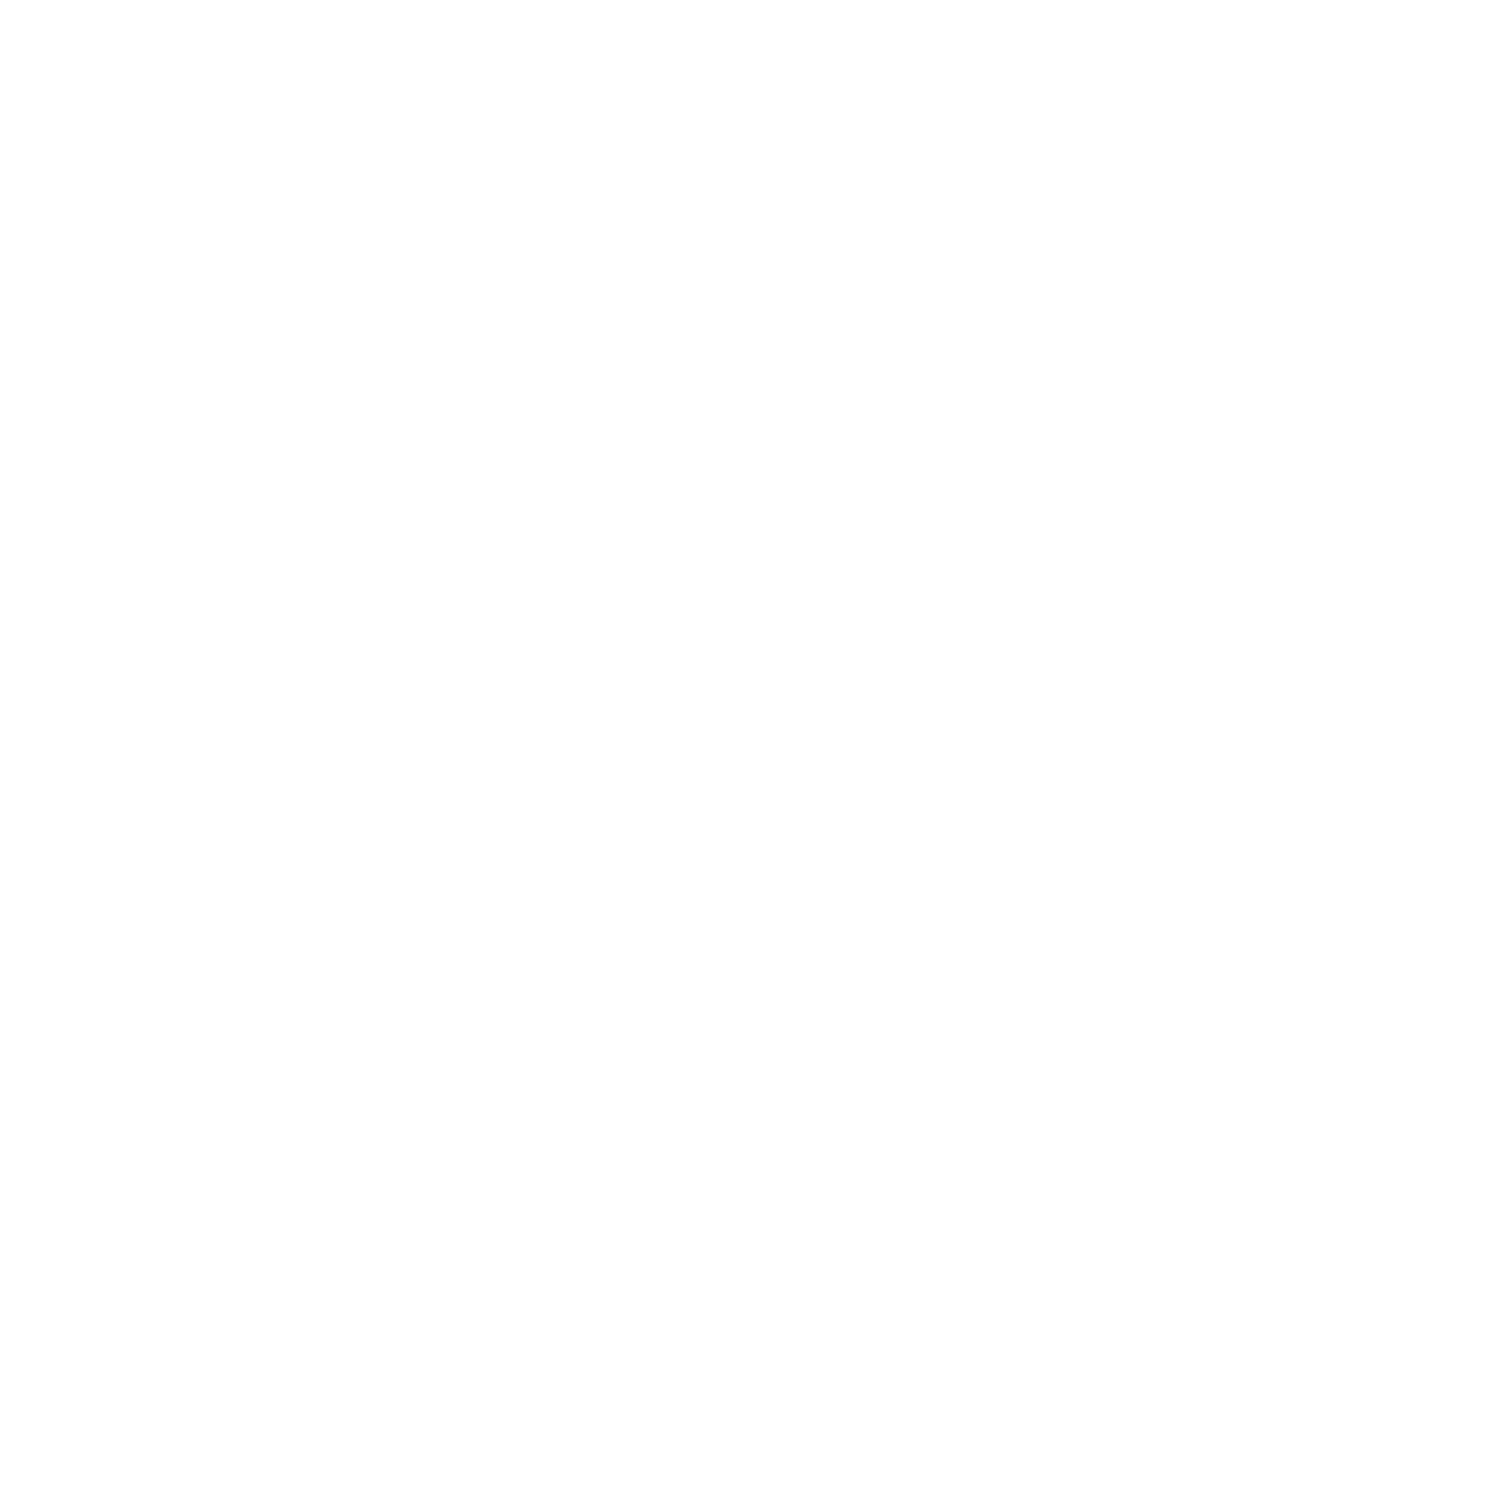 Bear Foot Wholesale Flooring